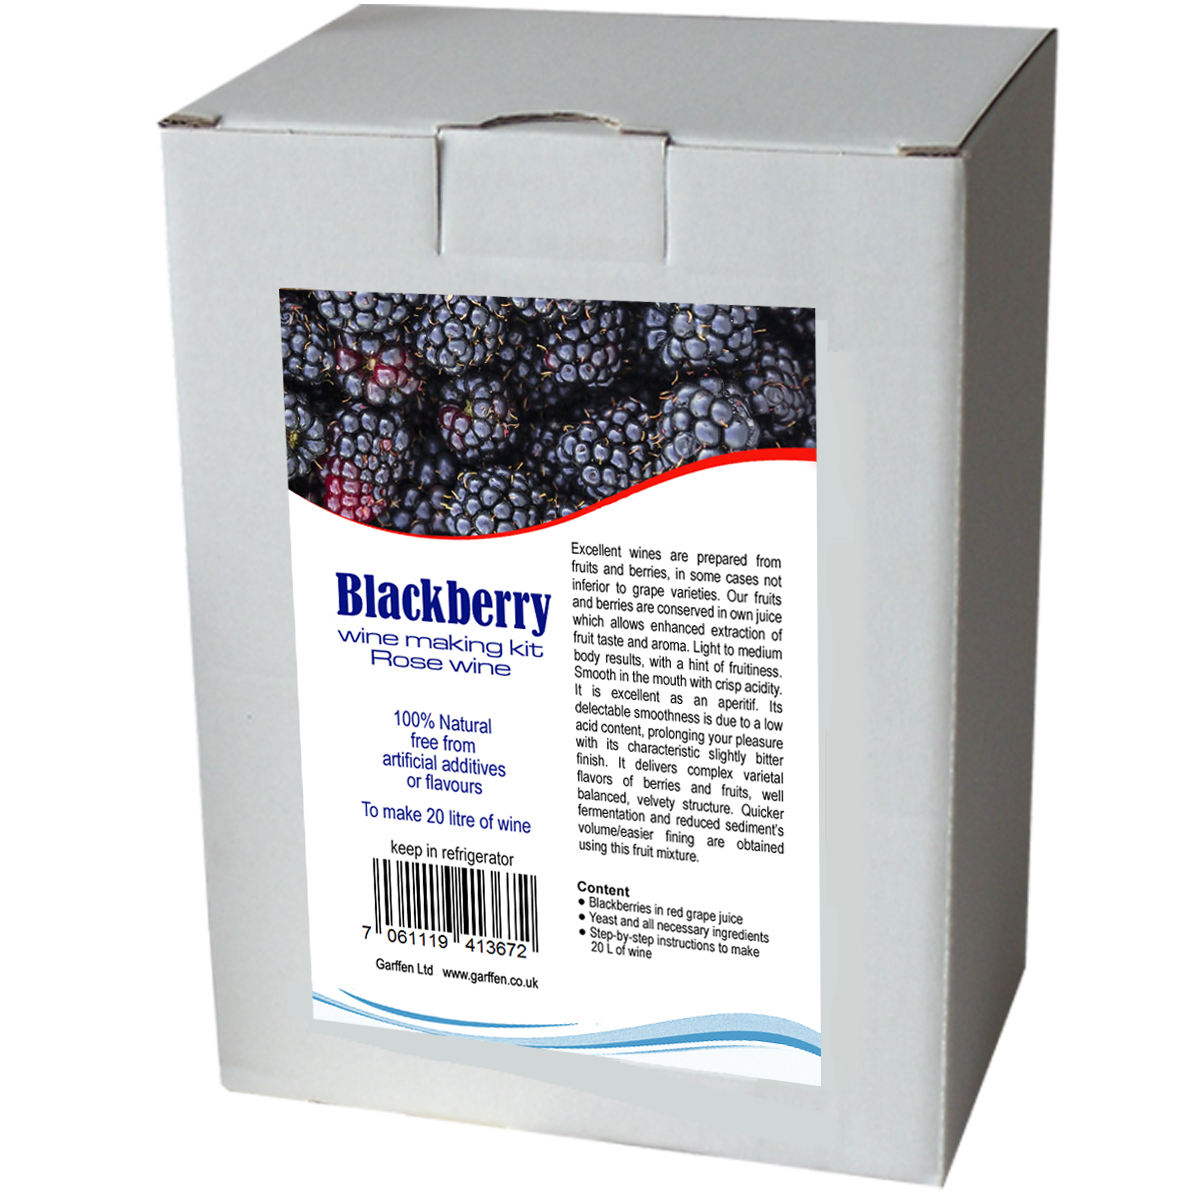 Blackberry wine making kit